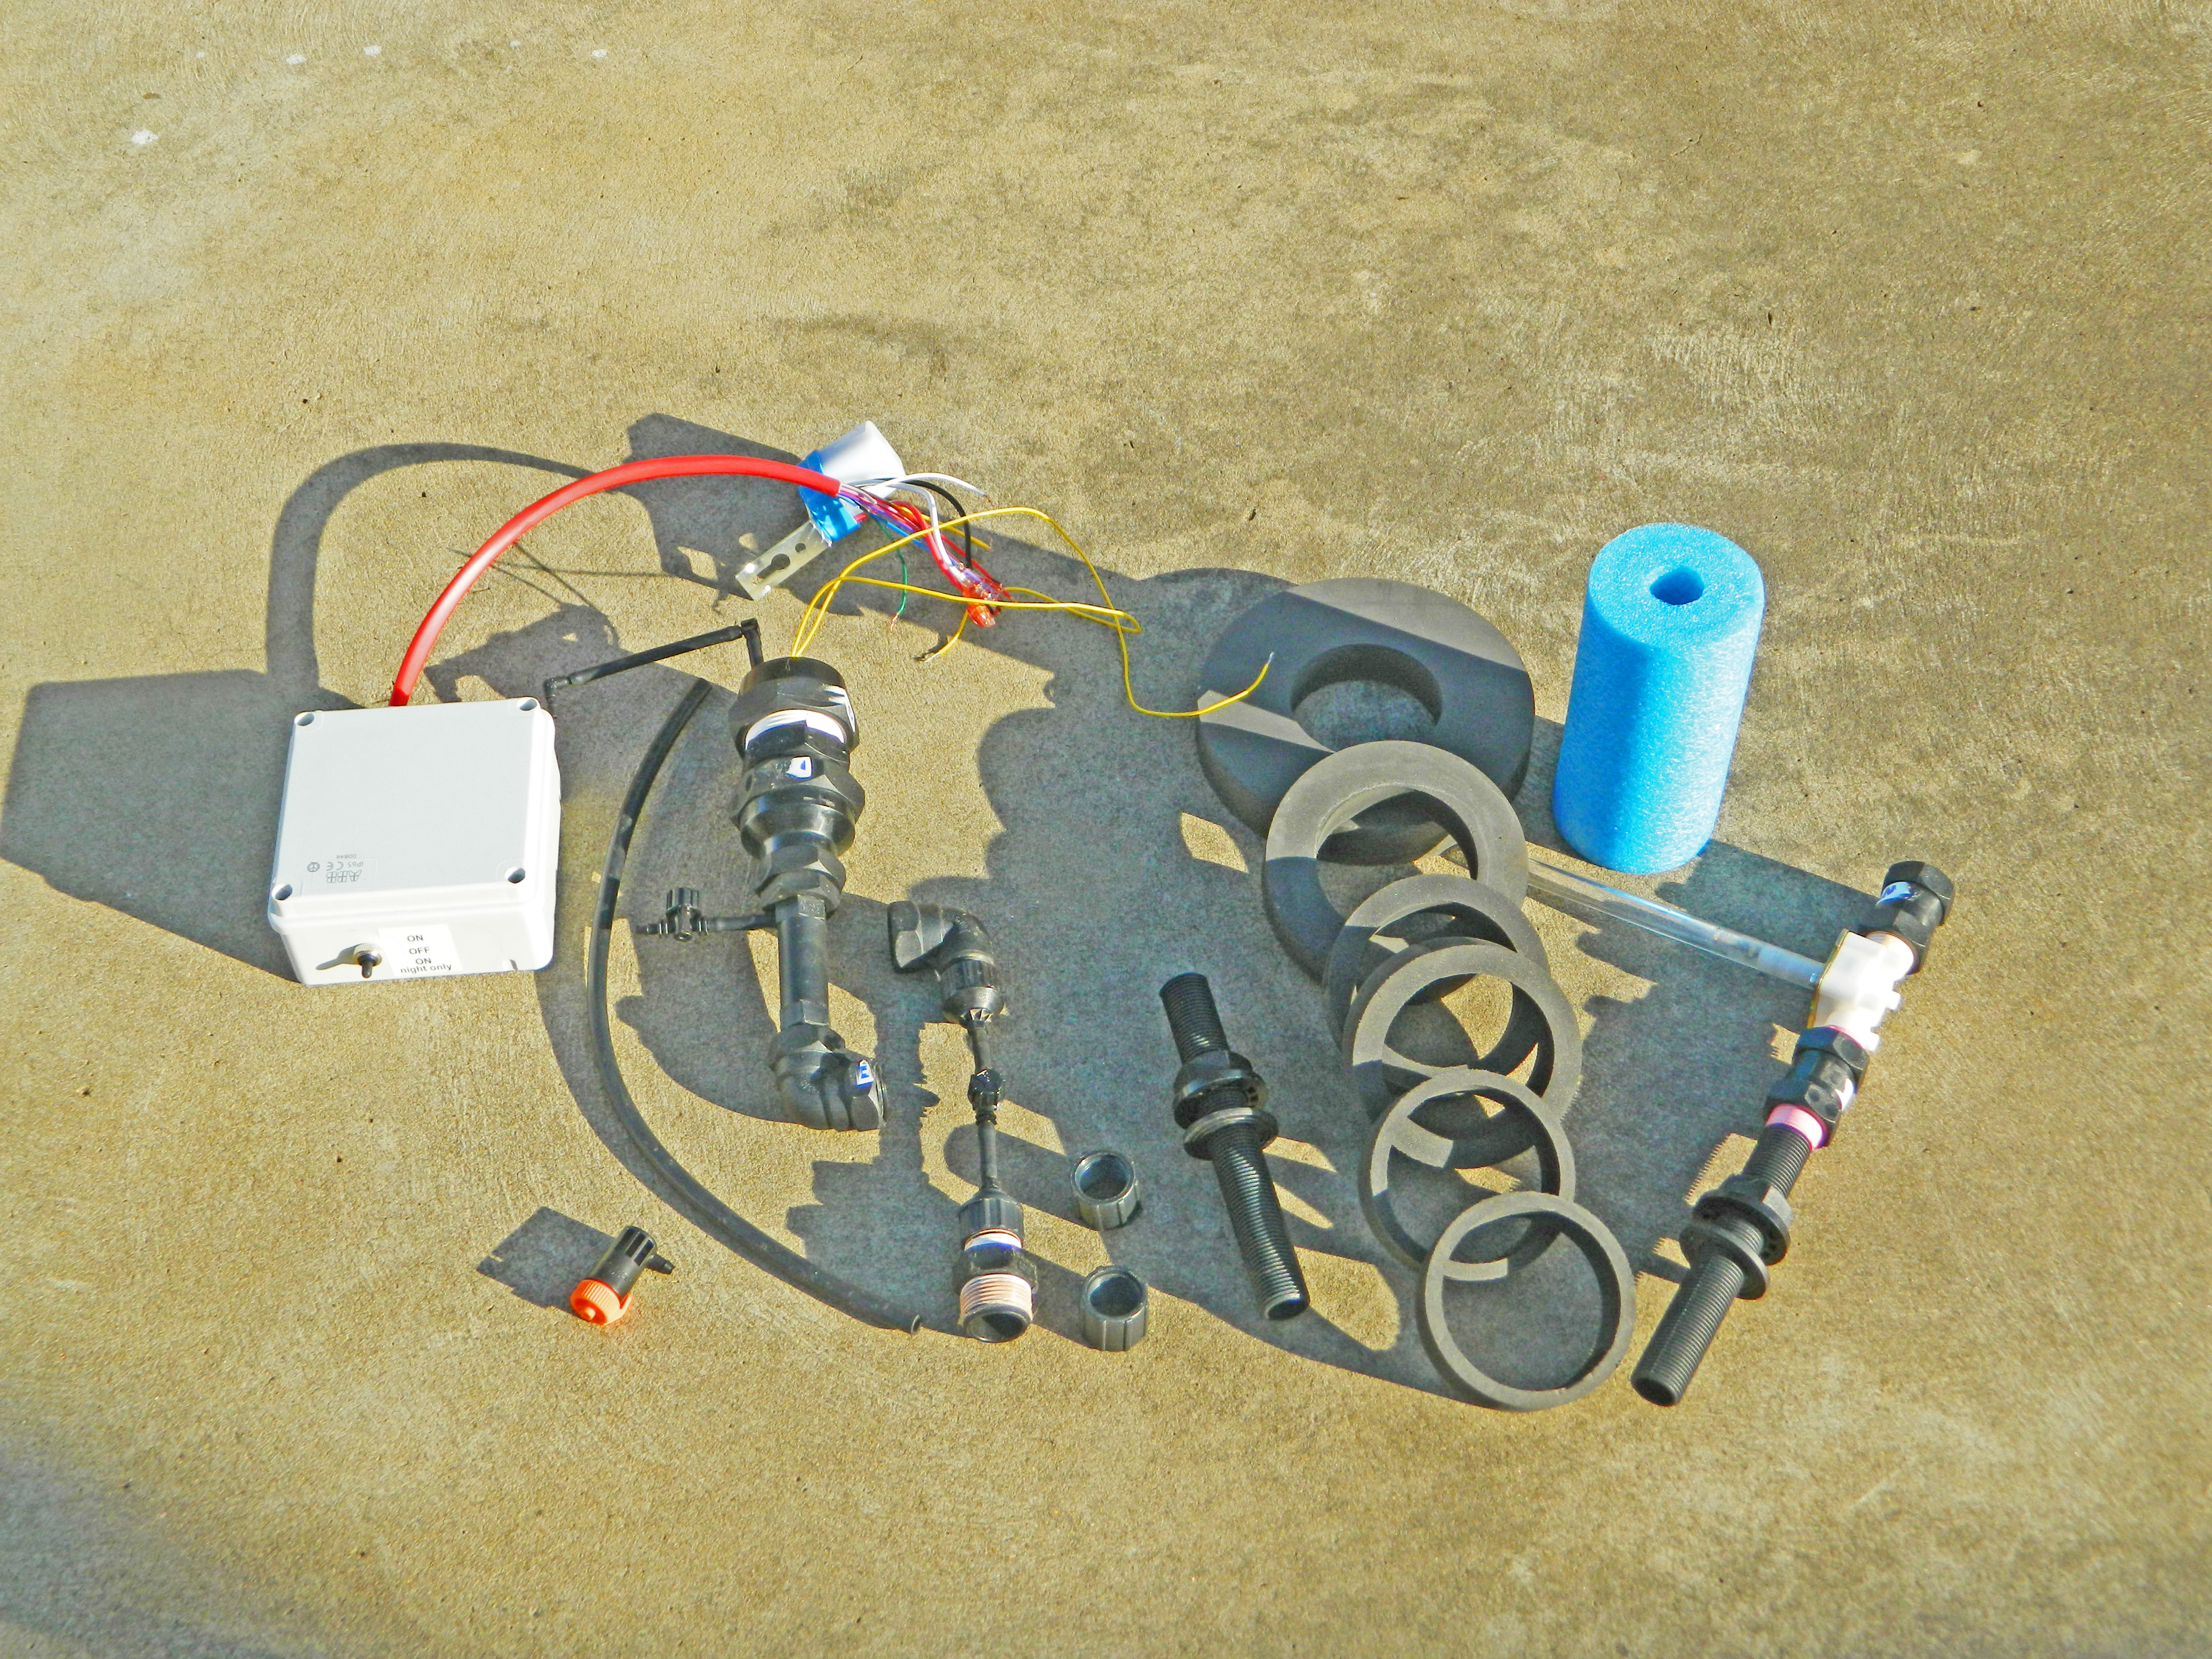 DIY Universal Measured Irrigation Controller Kit